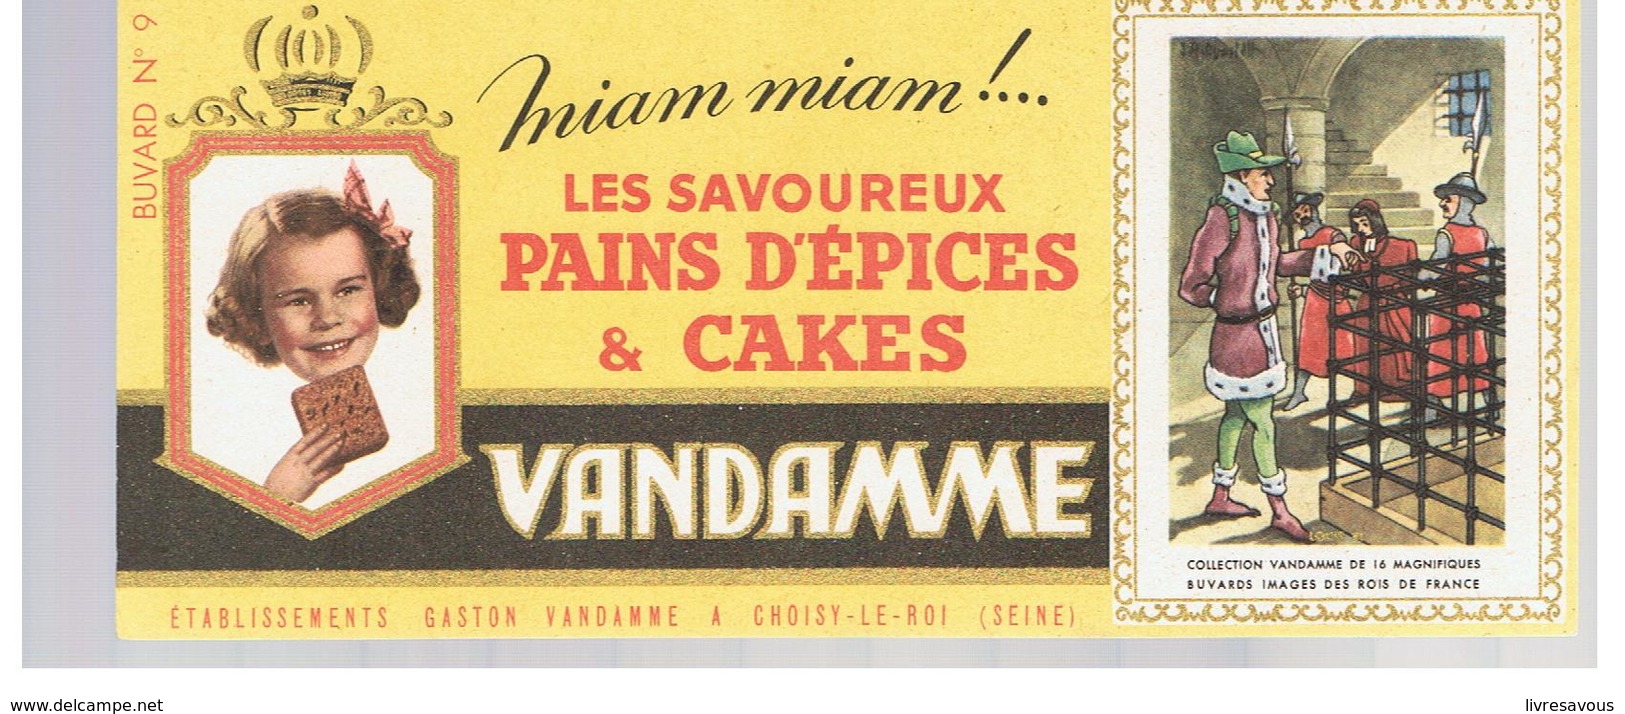 Buvard VANDAMME Buvards Images Des Rois De France N°9 Louis XI - Gingerbread